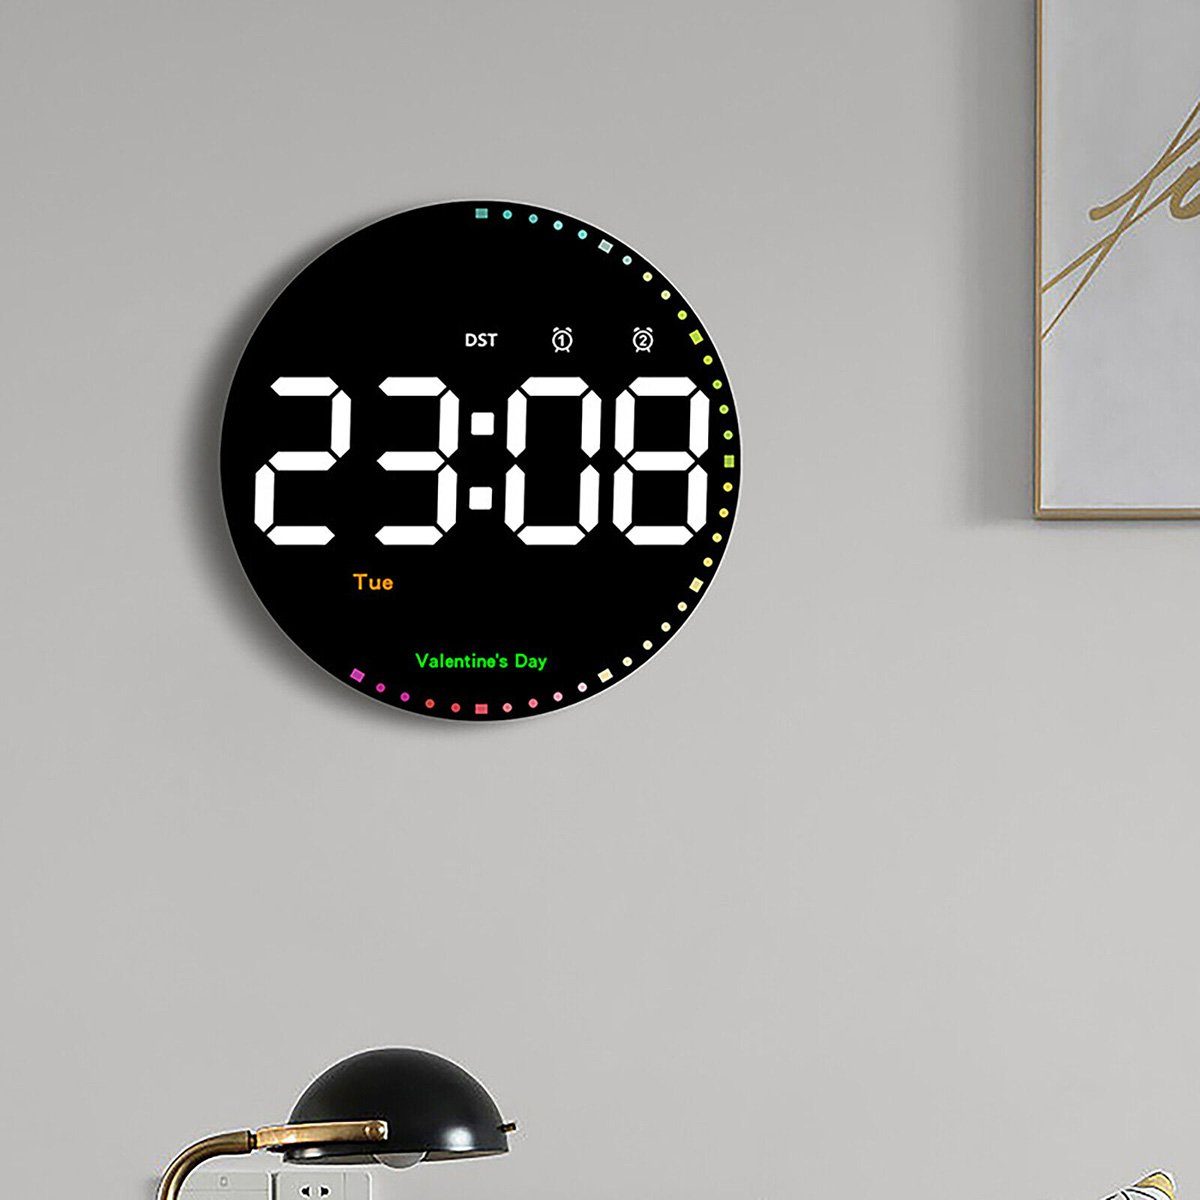 yozhiqu Wanduhr 10" digitale elektronische Uhr Kalender große Anzeige LED-Wanduhr (Einfache Wohnzimmerdekoration, farbenfrohe und intelligente LED-Uhr)